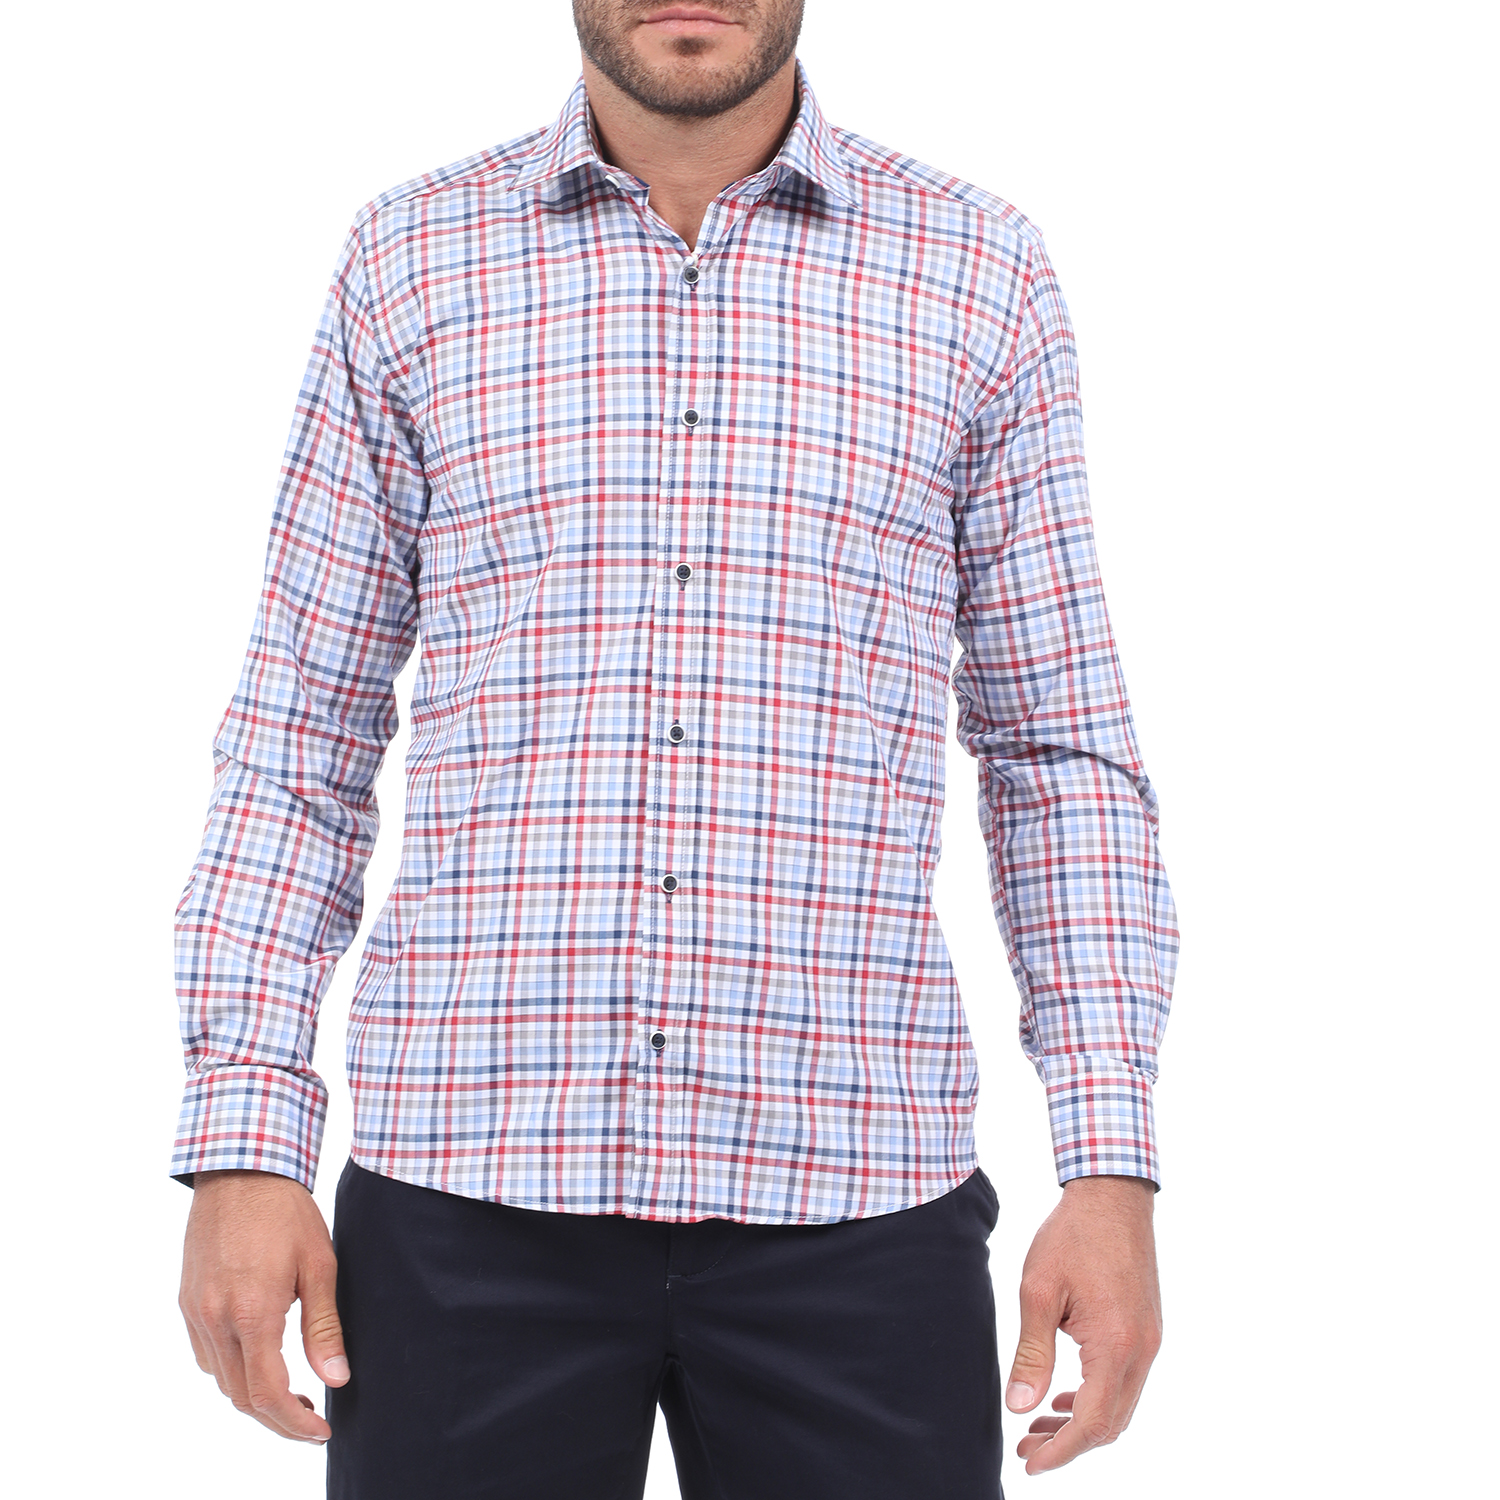 Ανδρικά/Ρούχα/Πουκάμισα/Μακρυμάνικα MARTIN & CO - Ανδρικό πουκάμισο MARTIN & CO SLIM FIT μπλε κόκινο